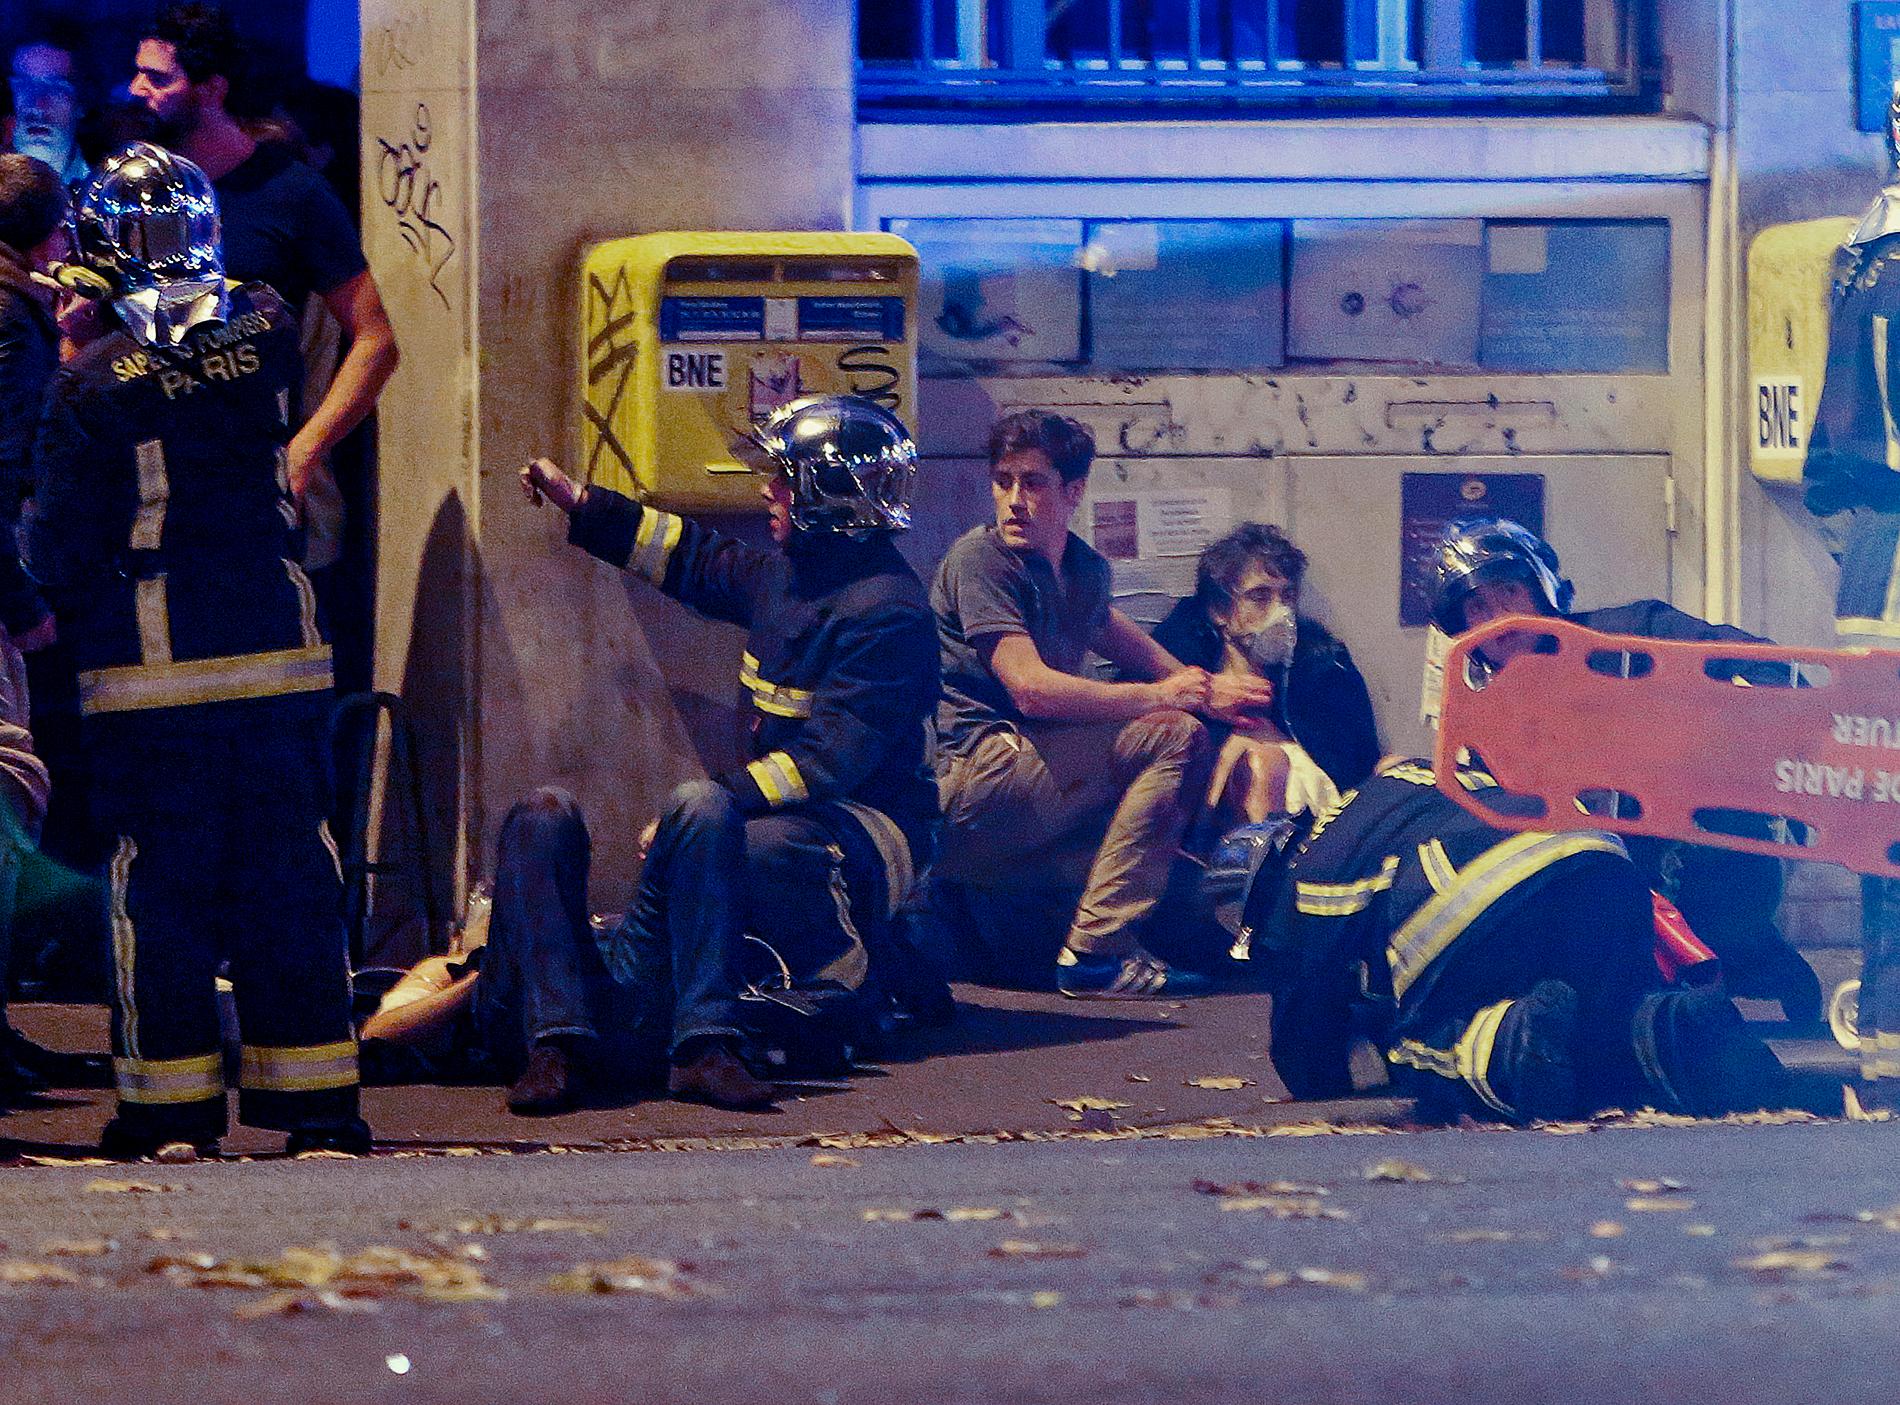 89 av dödsoffren vid terrordådet i Paris 2015 befann sig i en konsertlokalen Bataclan. 